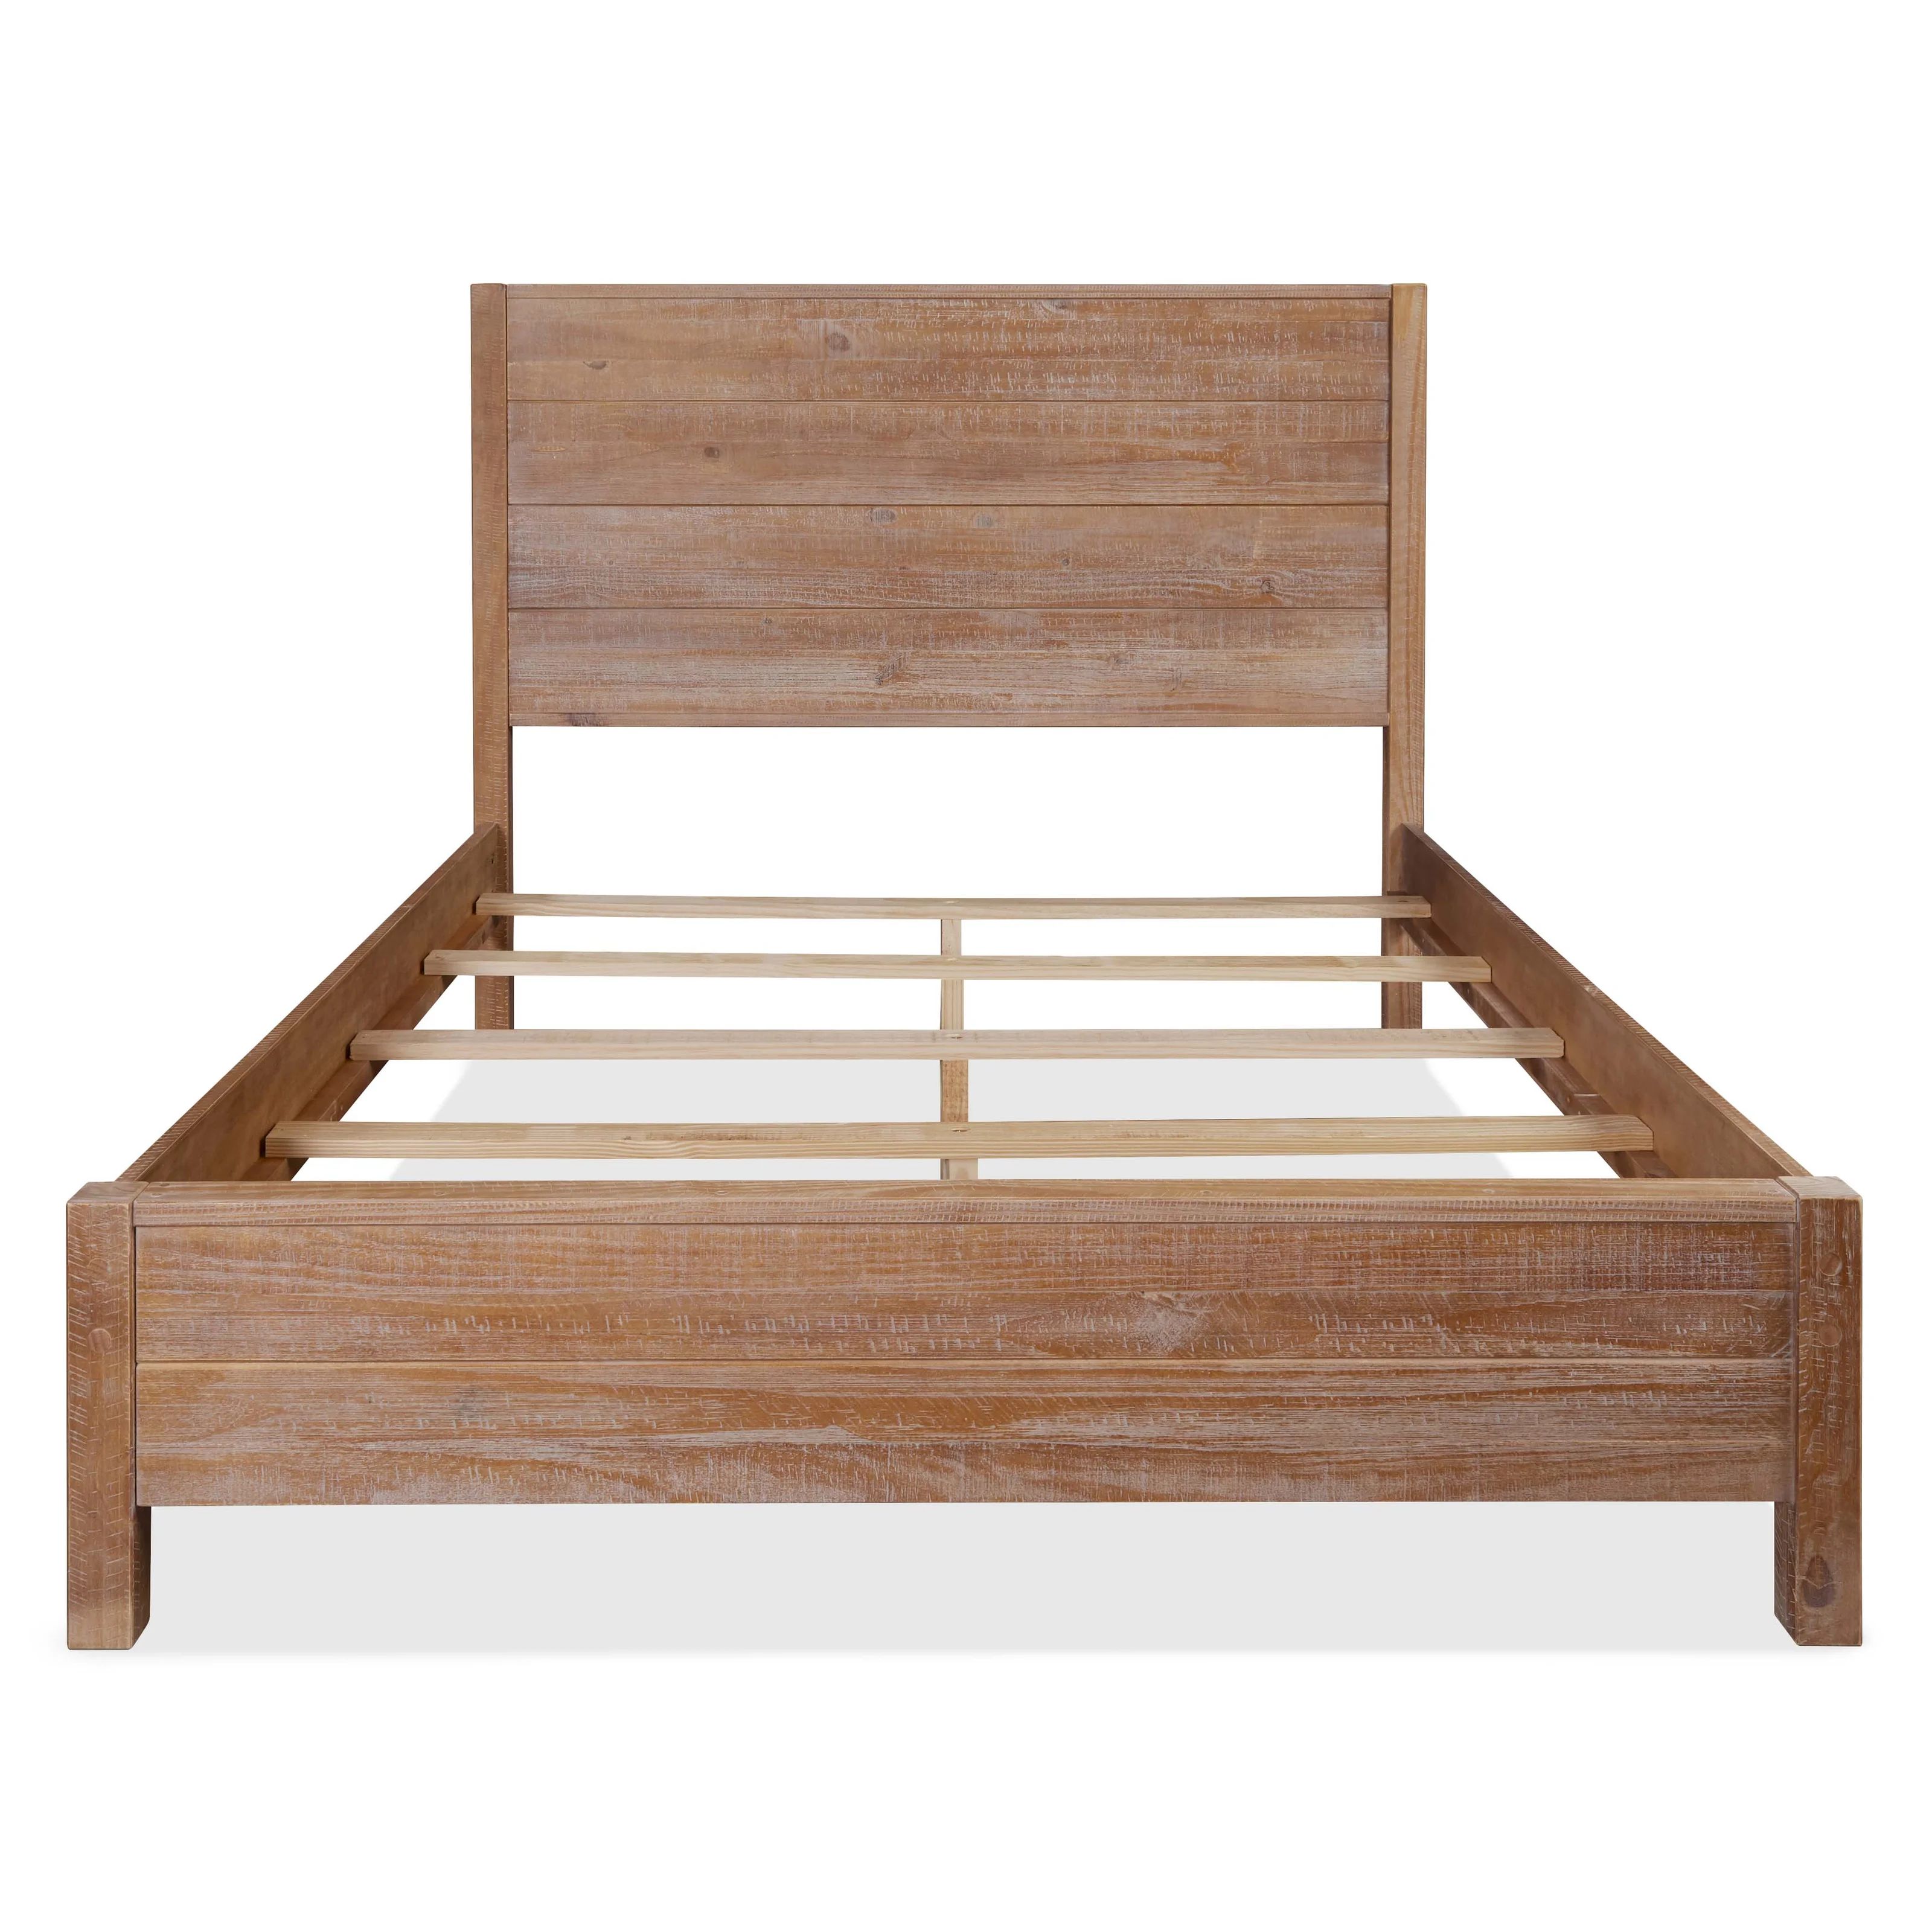 Montauk Solid Wood Bed | Wayfair North America